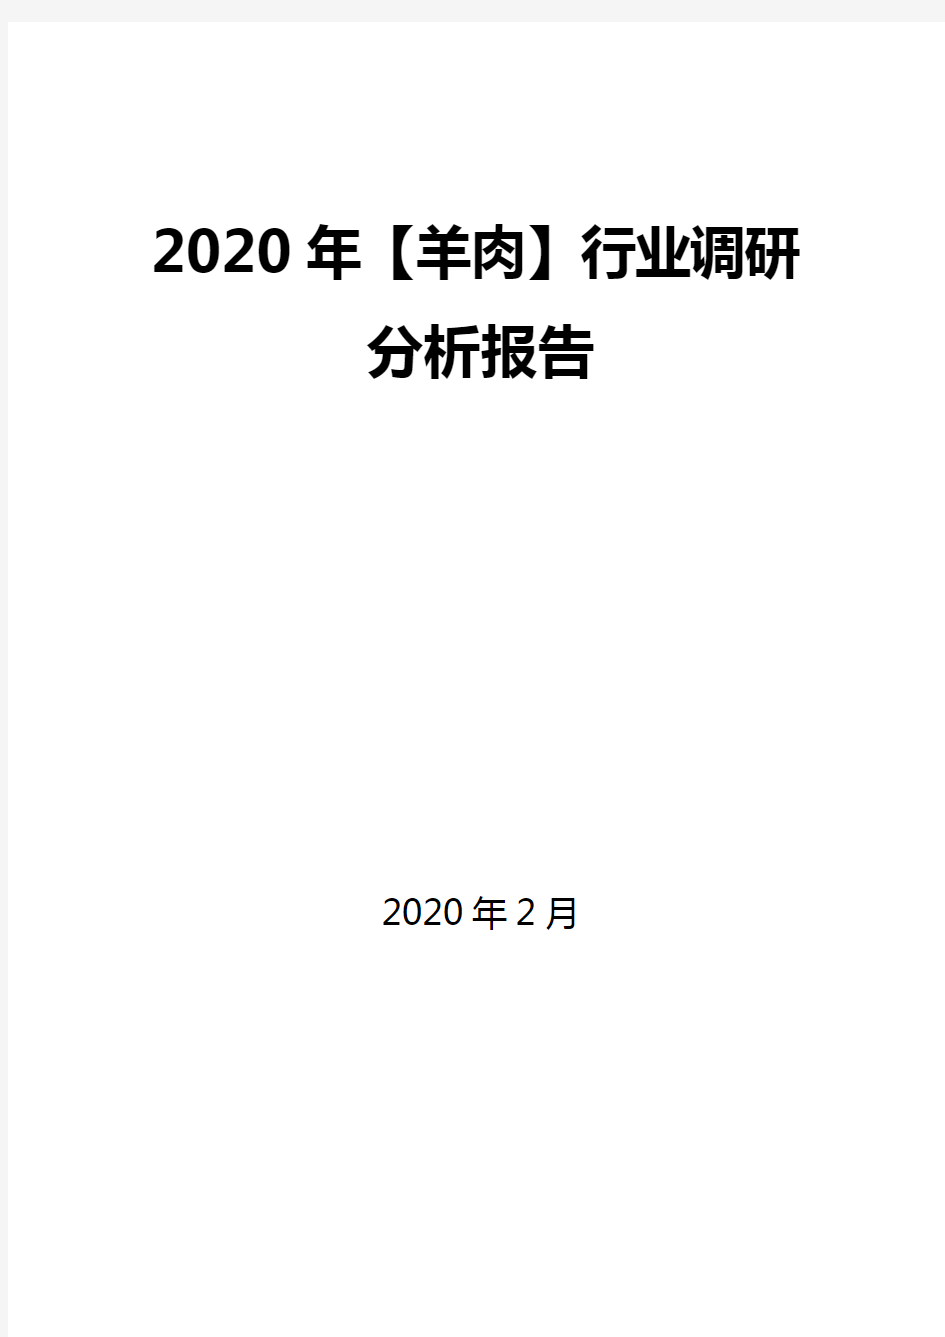 2020年【羊肉】行业调研分析报告